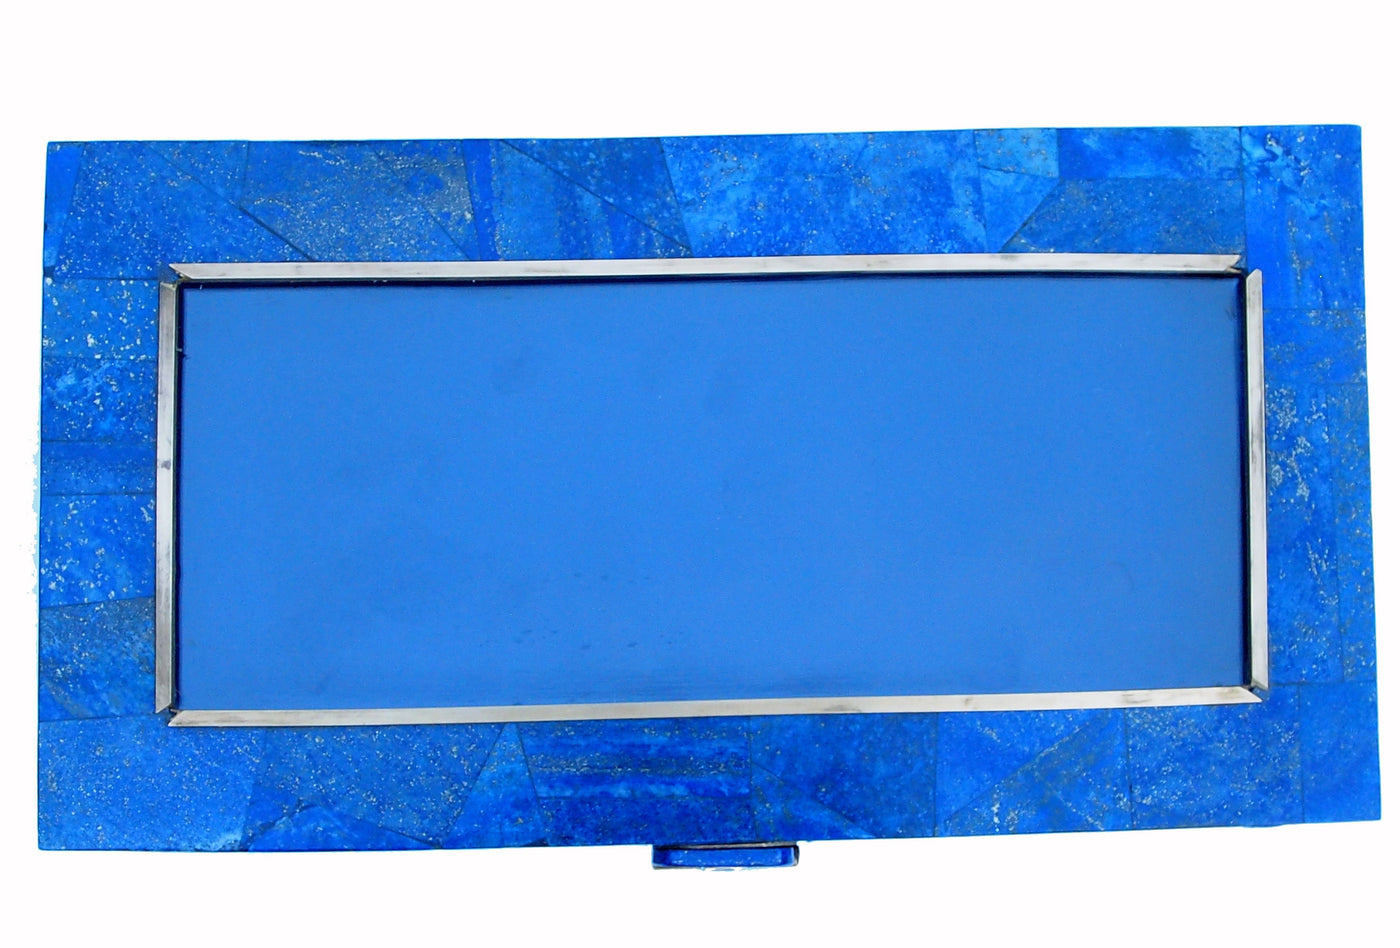 Extravagant Royal blau echt Lapis lazuli büchse Schmuck Dose schatulle Gefäß  mit Glas und messing verziert aus Afghanistan Nr-18/B  Orientsbazar   